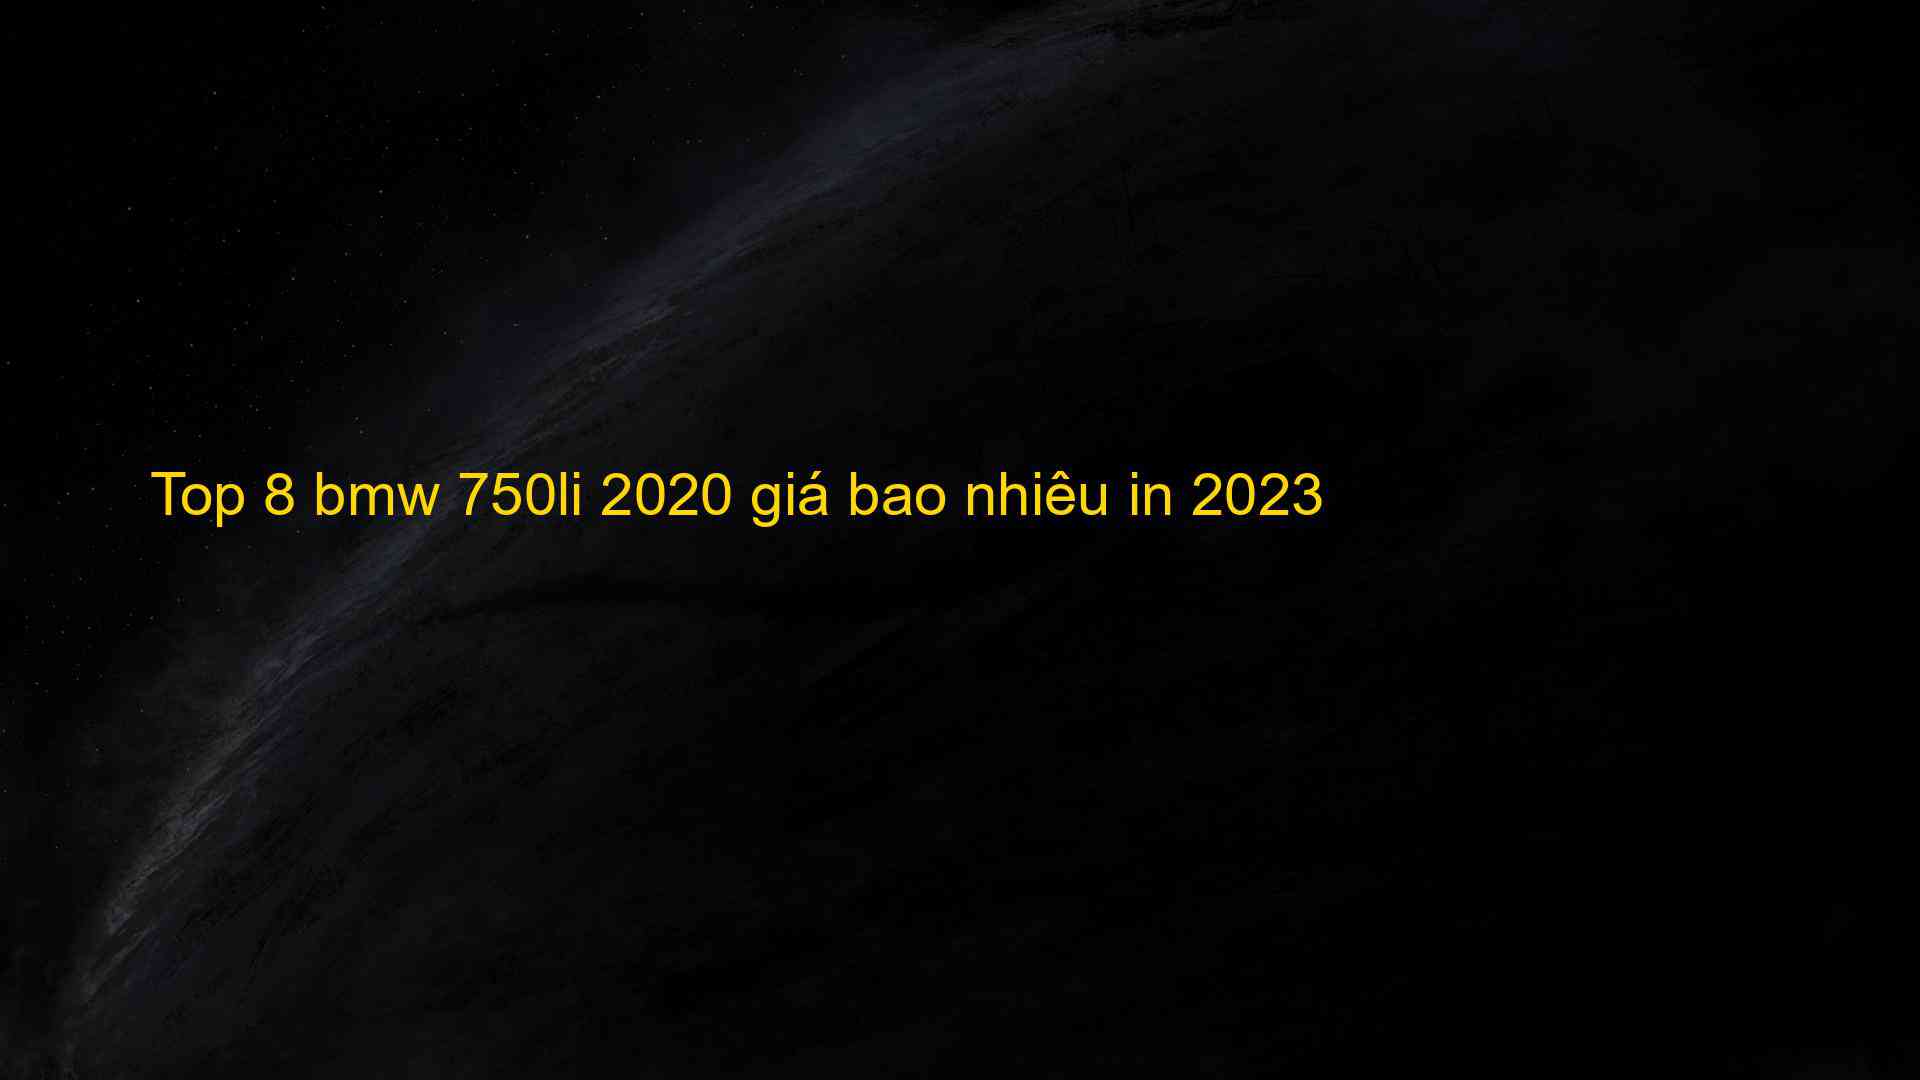 Top 8 bmw 750li 2020 giá bao nhiêu in 2023 - Kiến Thức Cho Người lao Động Việt Nam